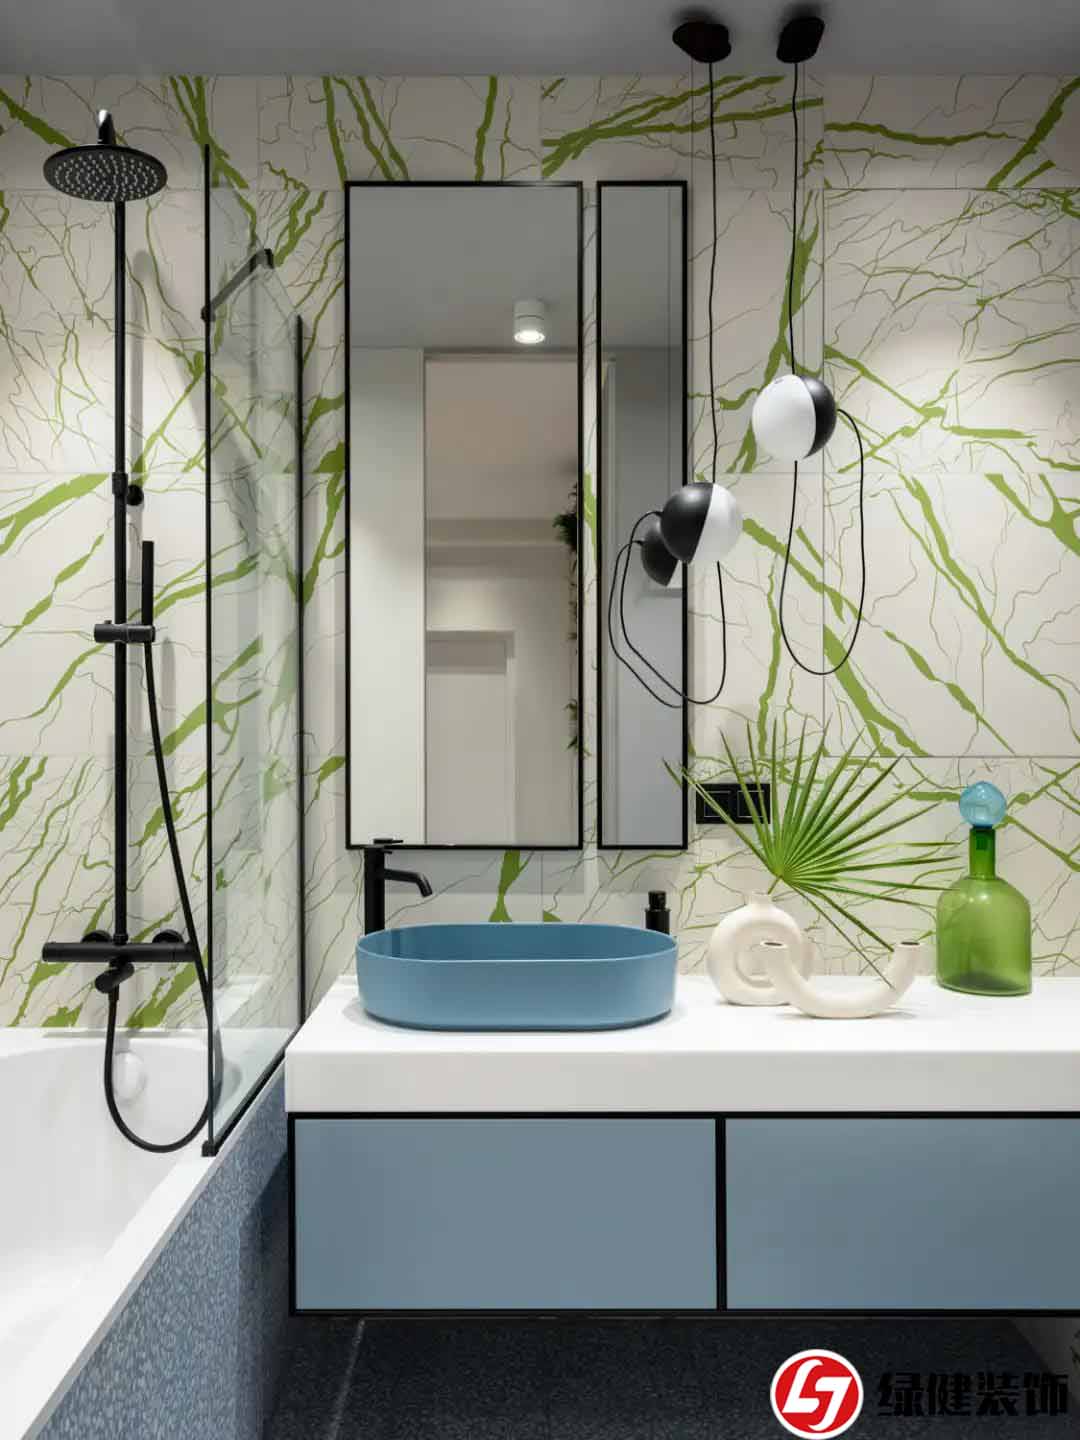 【六安綠健裝飾】—— 打造明亮浴室的技巧